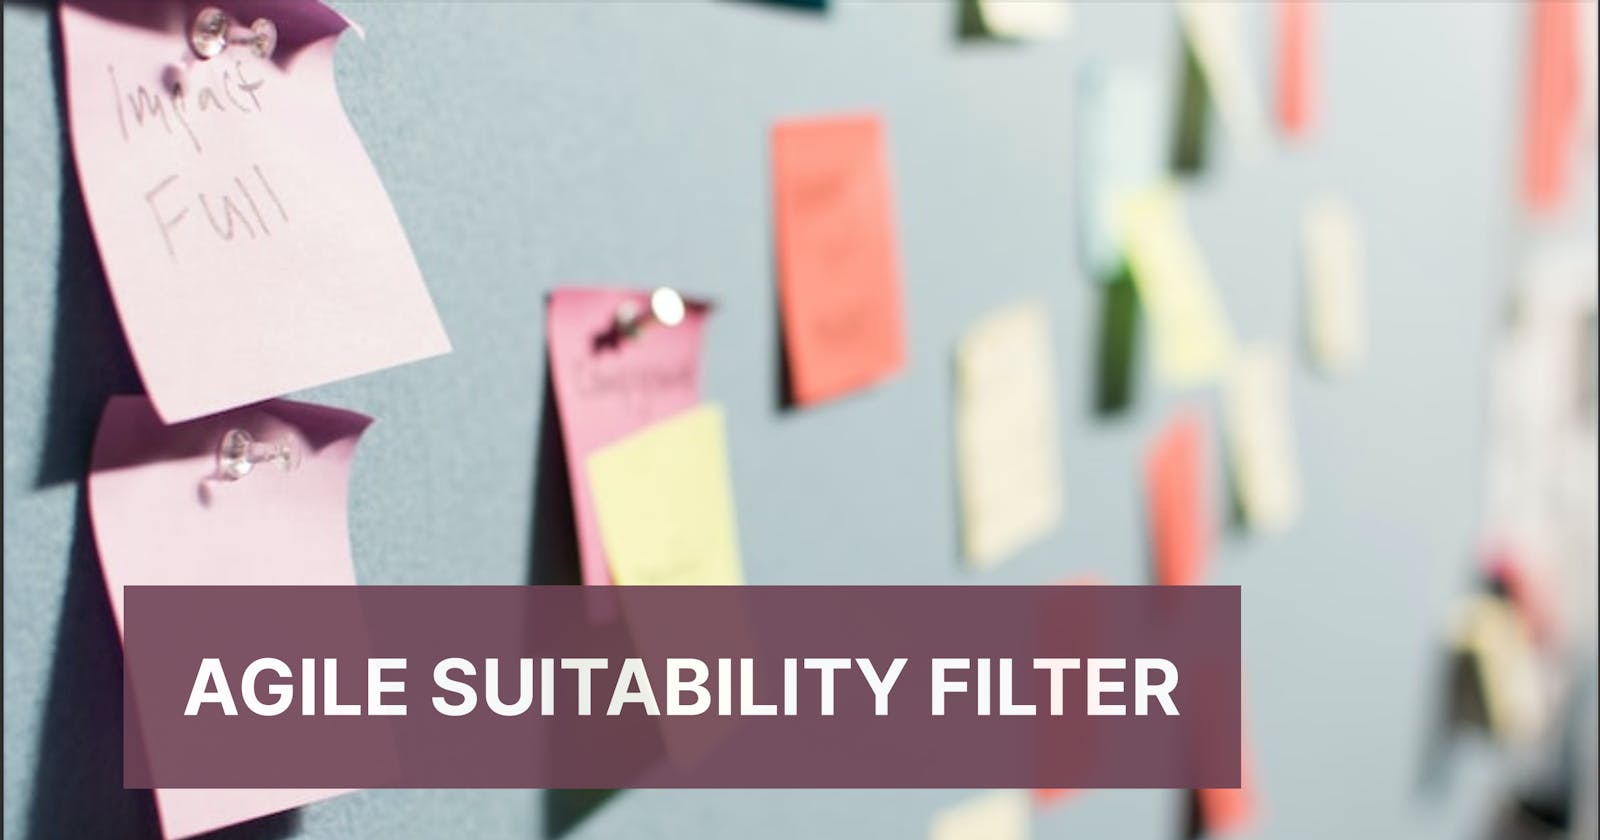 Agile Suitability Filter